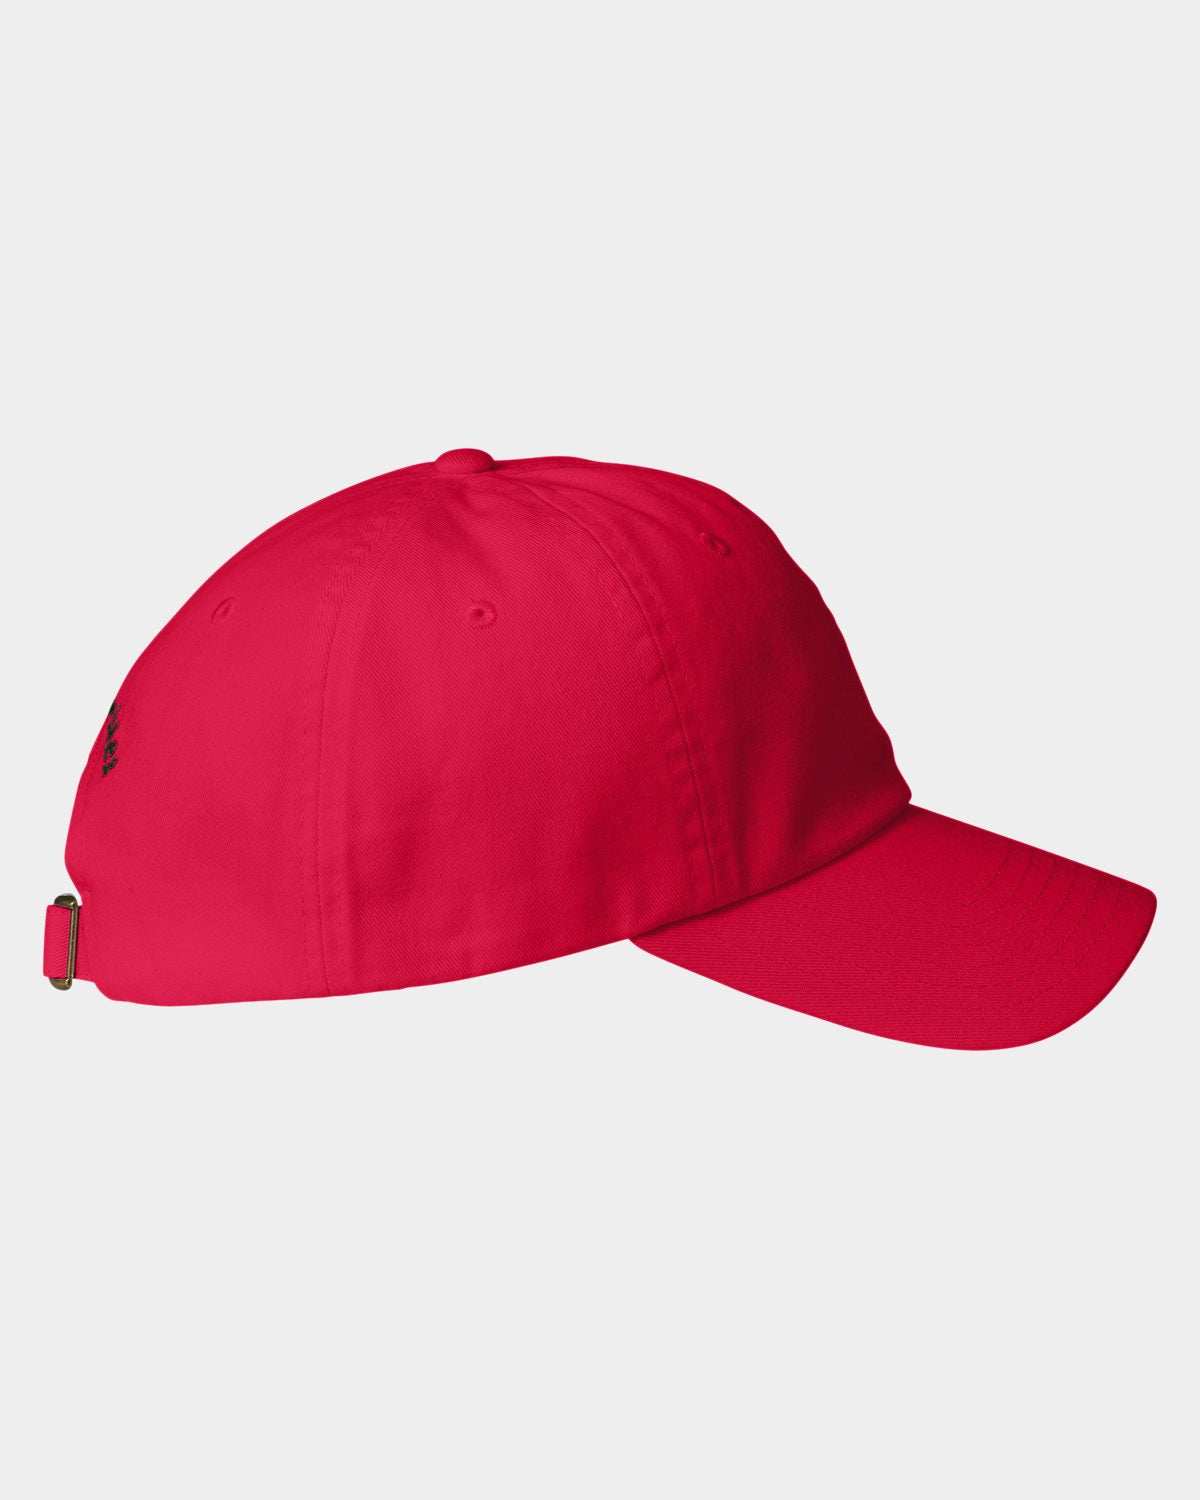 Vineyard Vines Custom Baseball Hats, Lighthouse Red